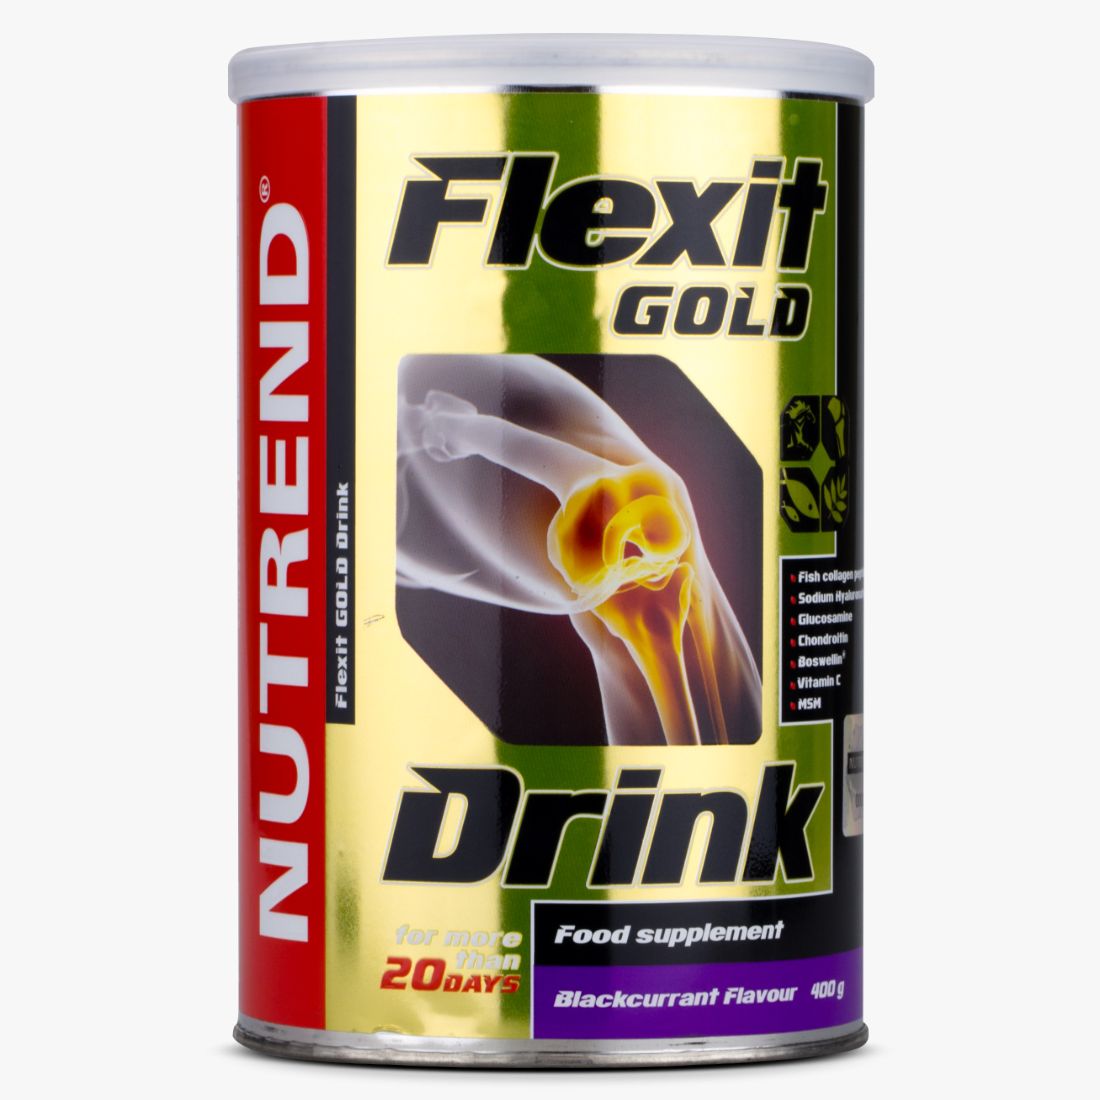 Nutrend - Flexit Gold Drink